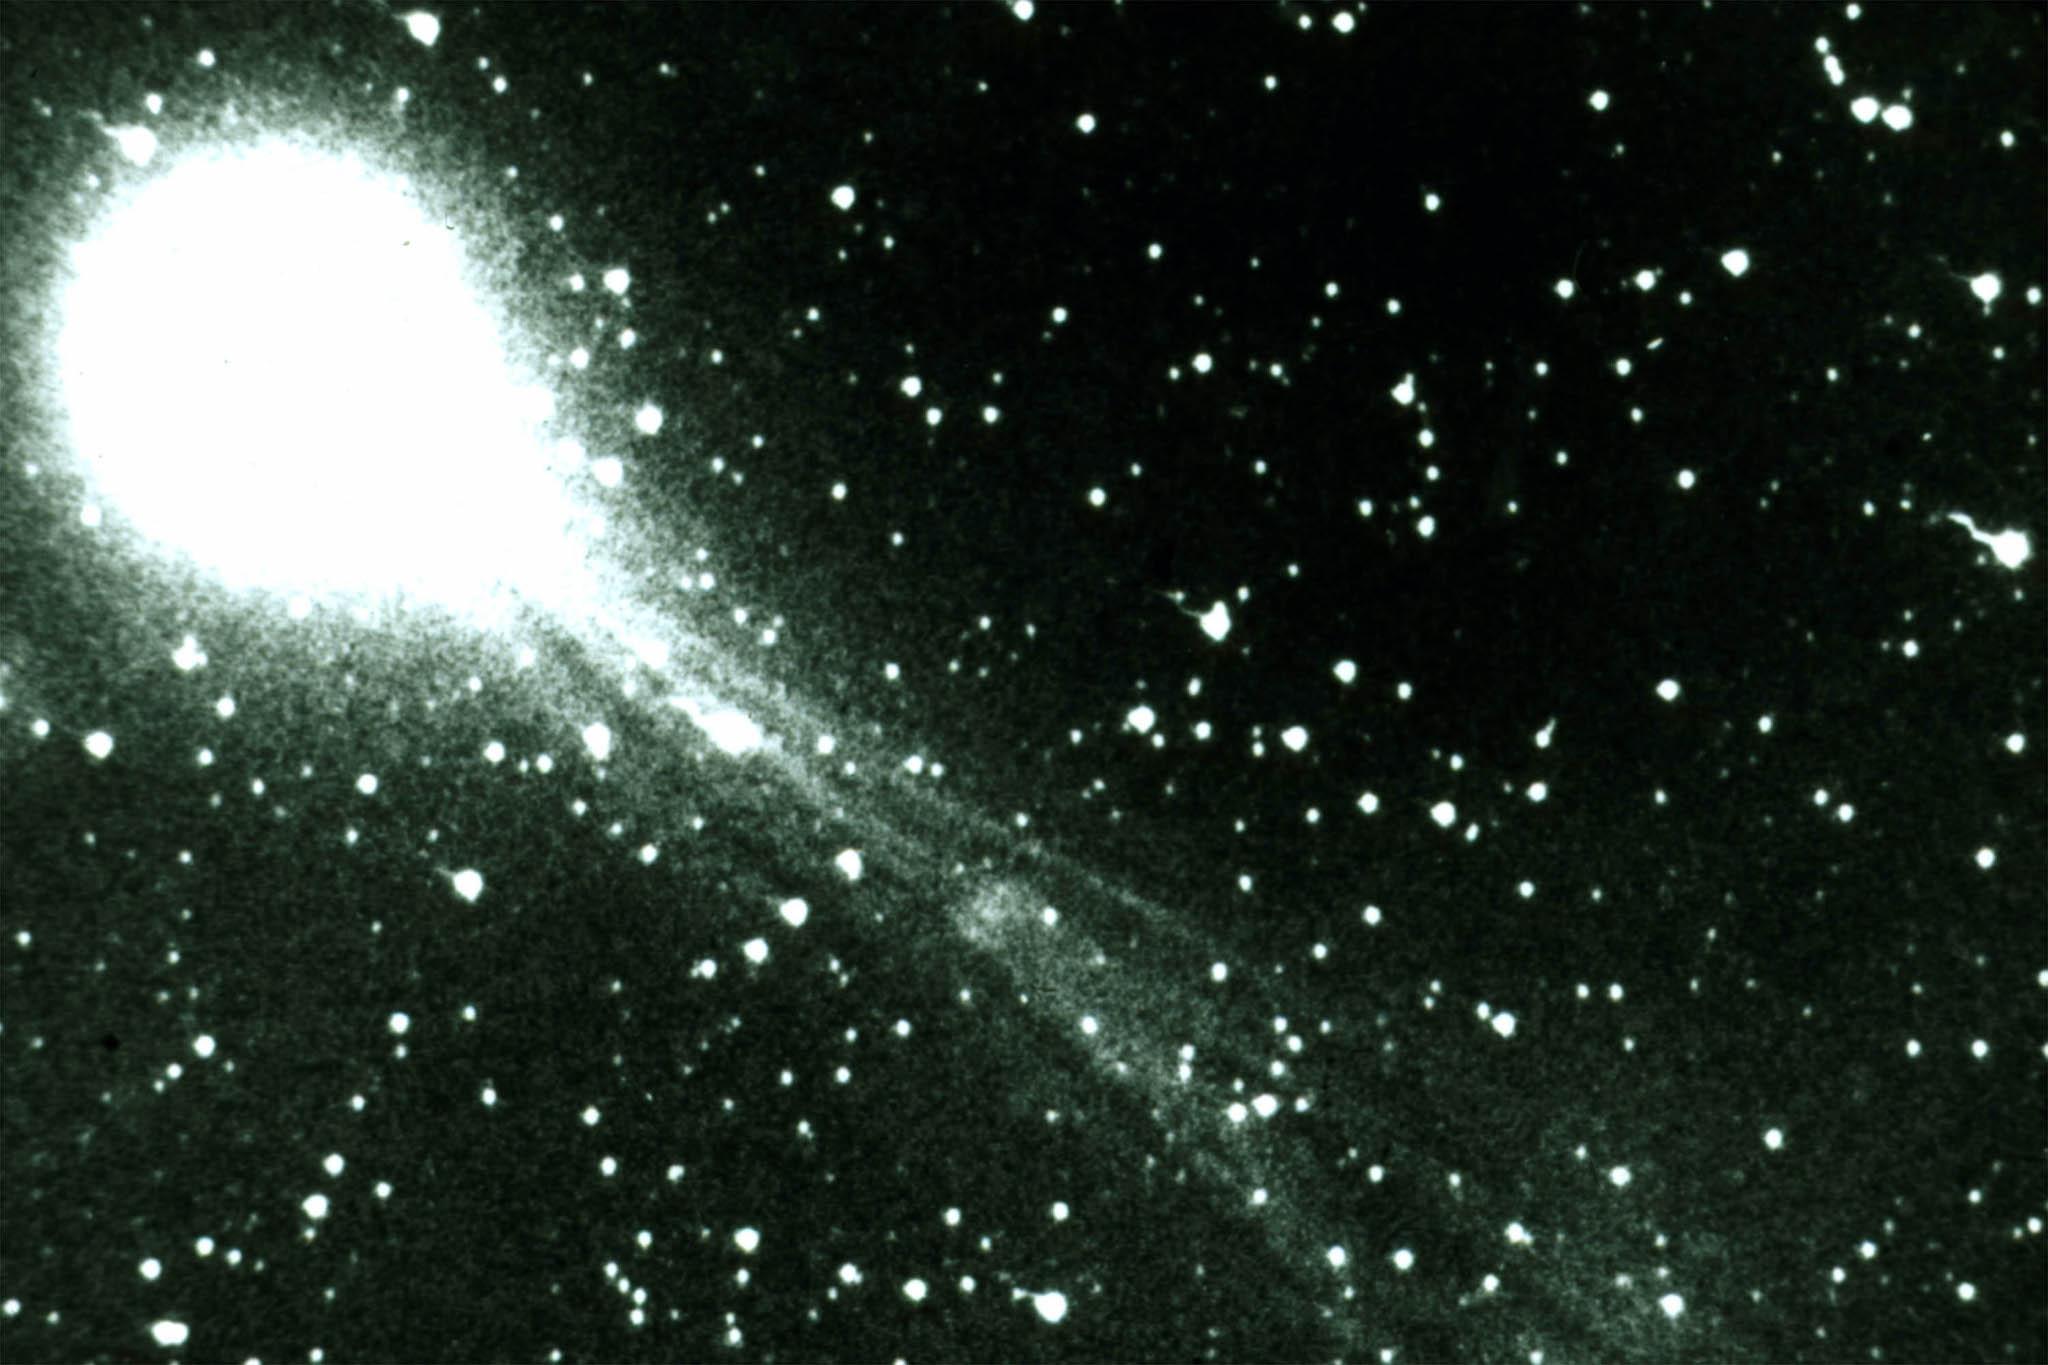 Halley’s Comet in 1986